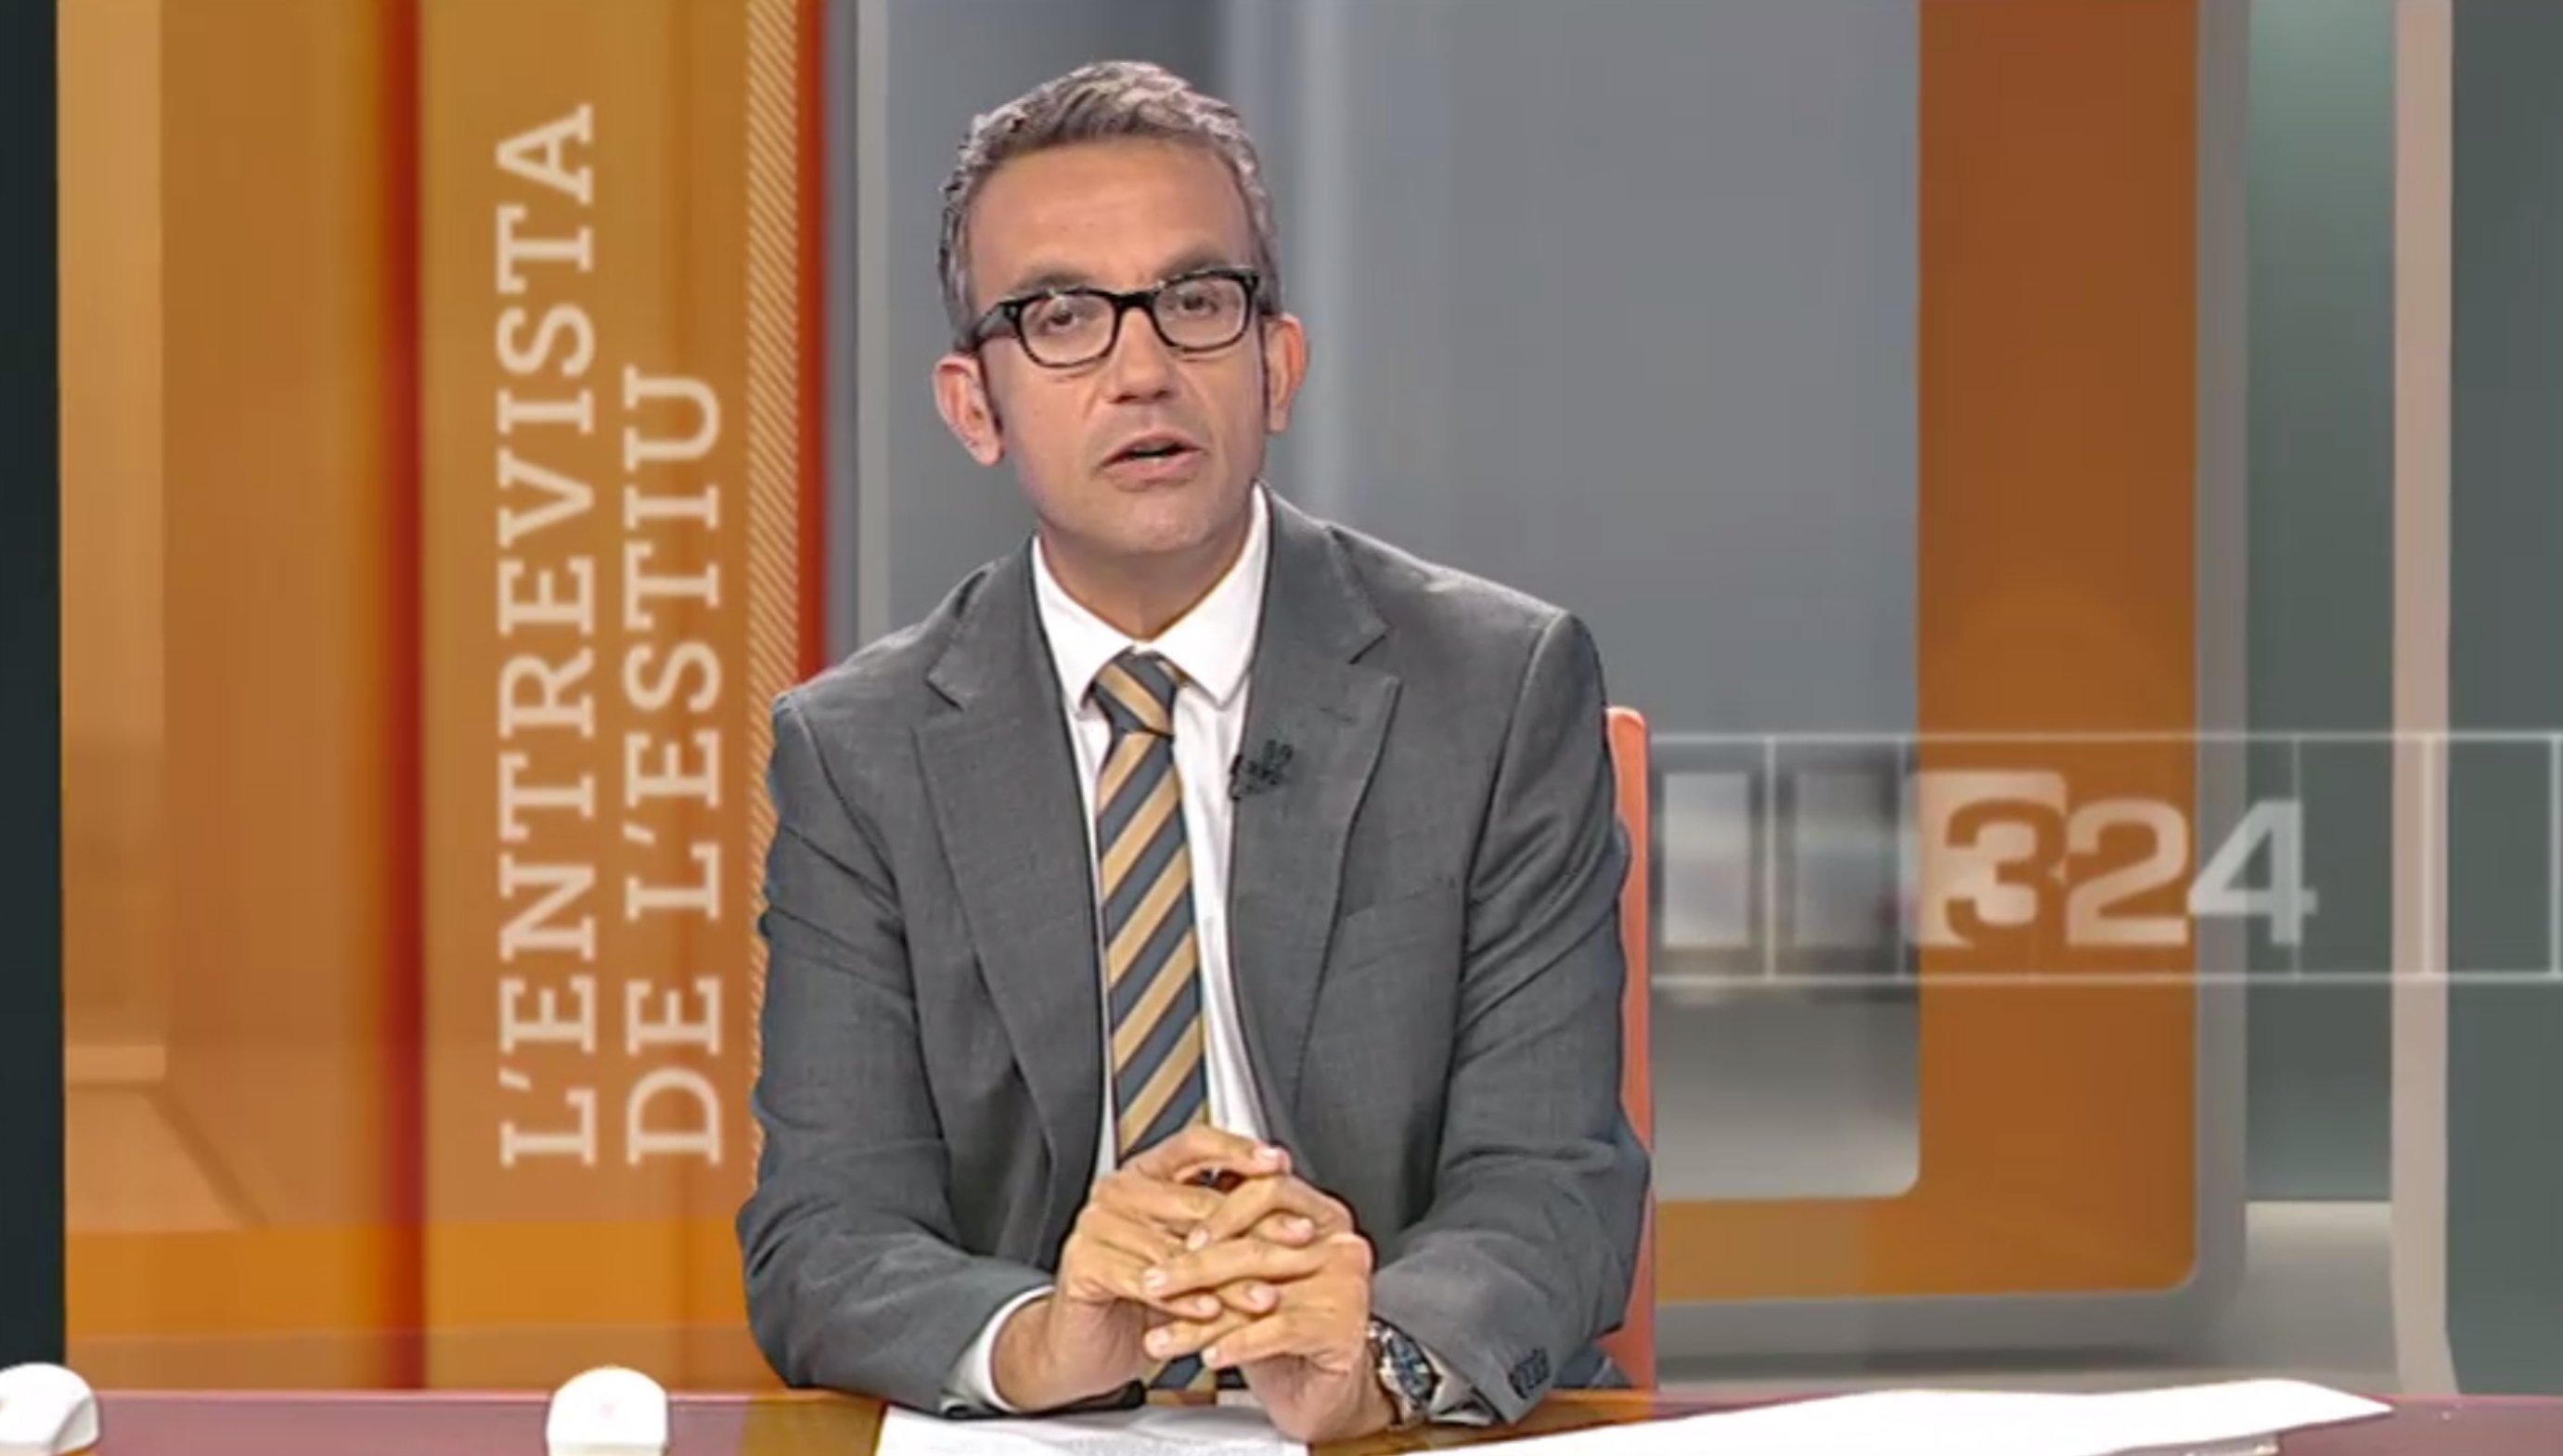 Jaume Freixes (TV3) rep la trucada de la mare en el pitjor moment: "A mi..."